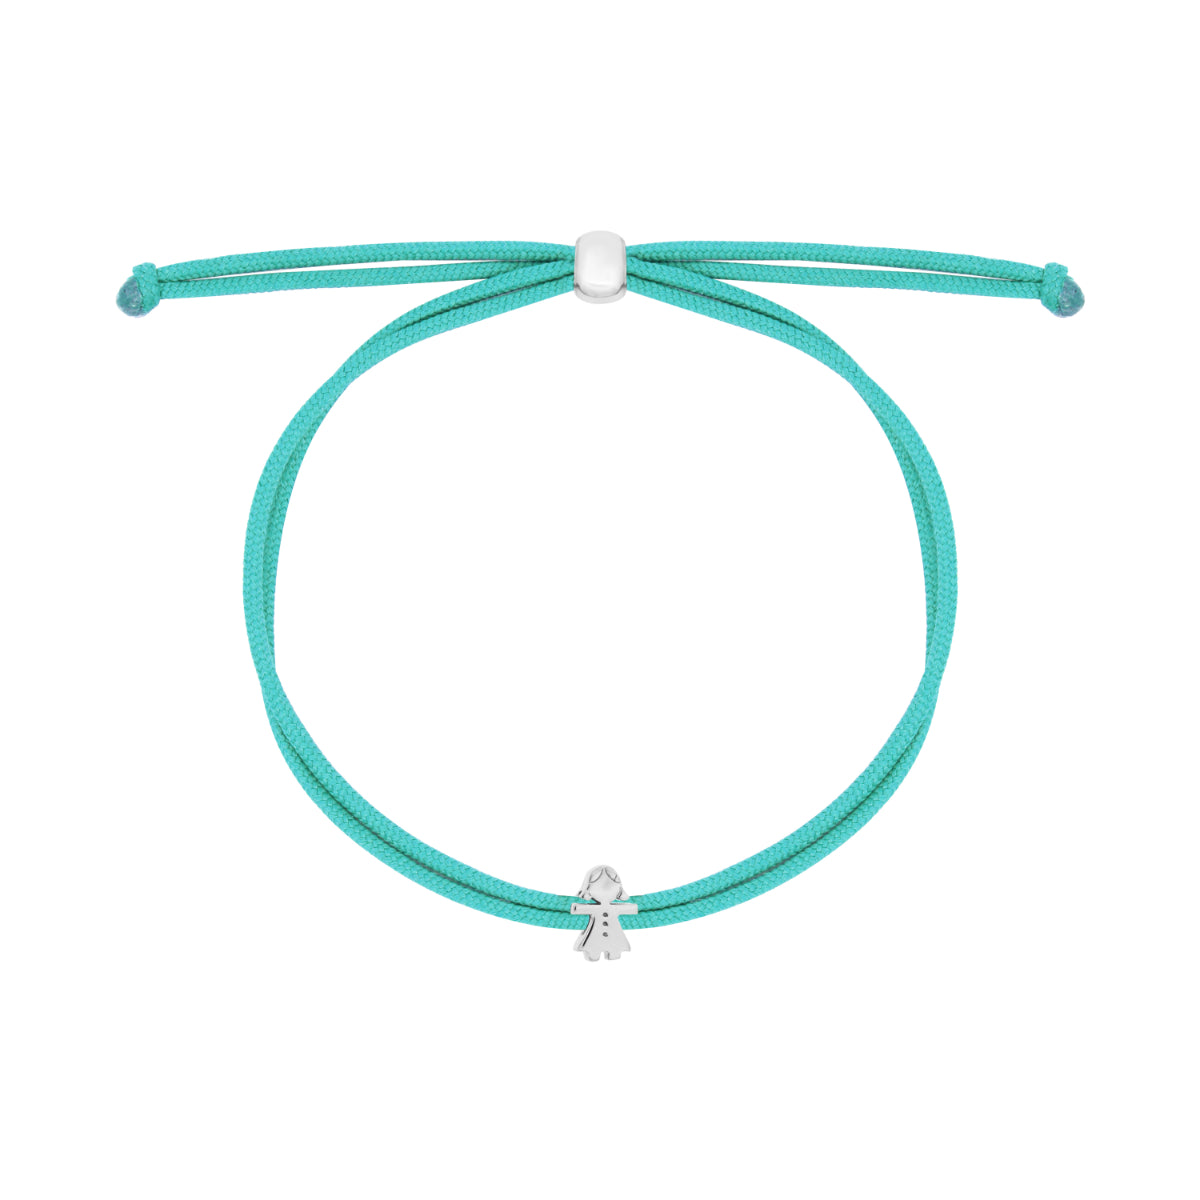 Bracelets - Carousel double thread mum - 4 | Rue des Mille